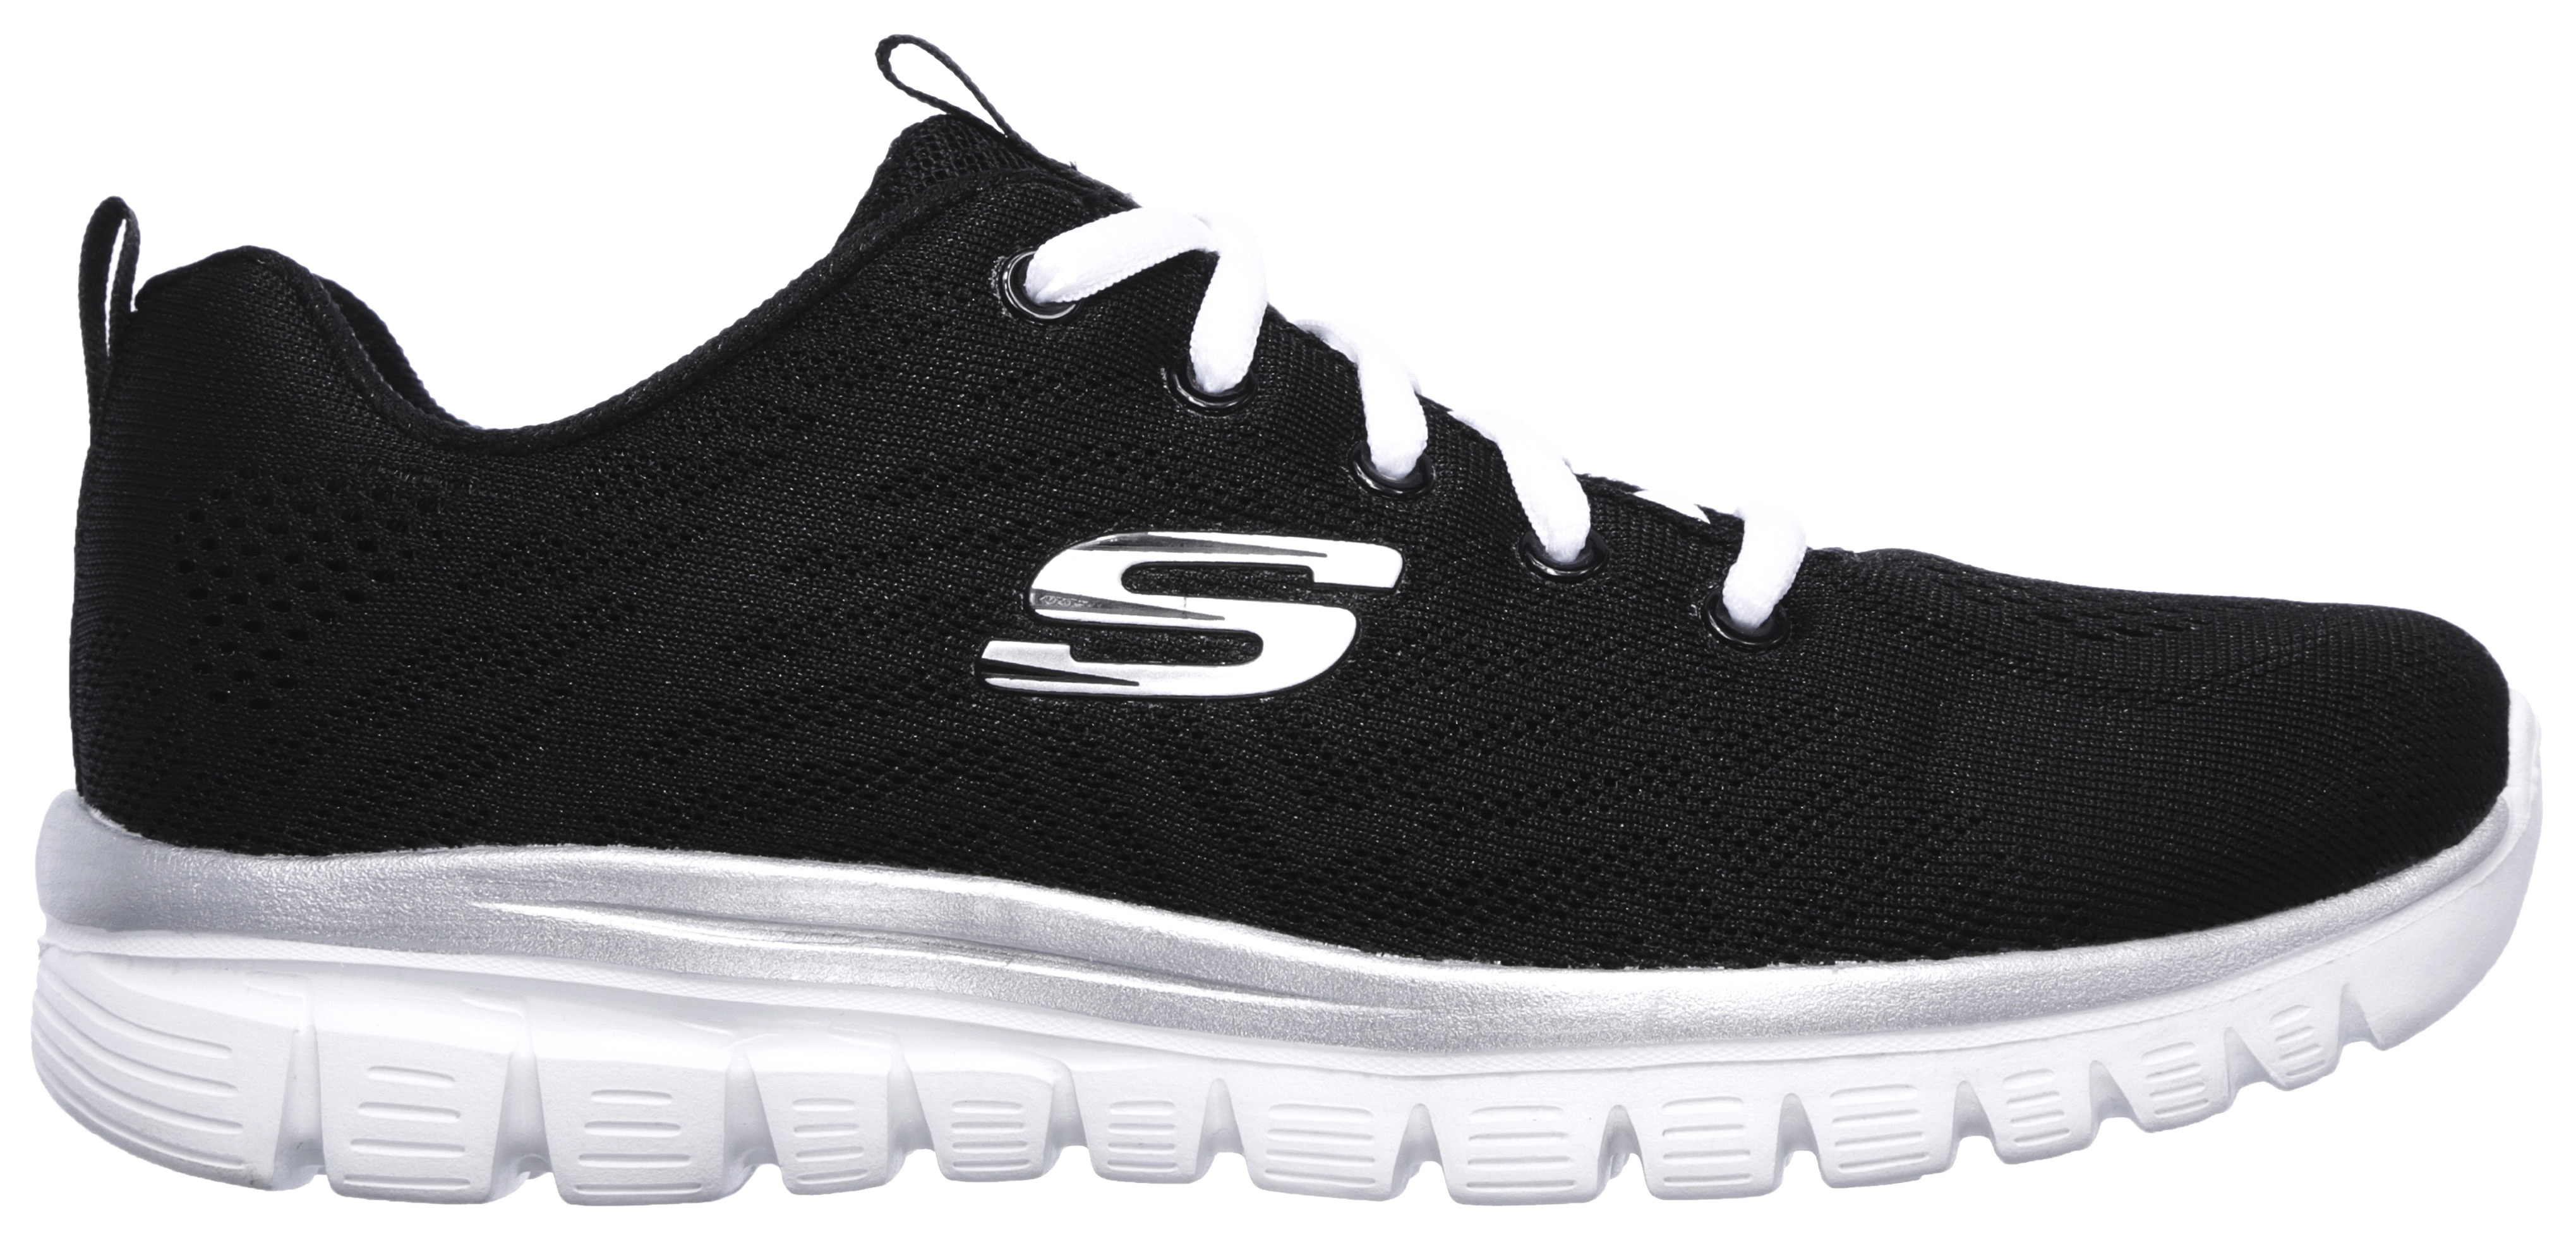 Skechers Sneaker "Graceful - Get Connected"